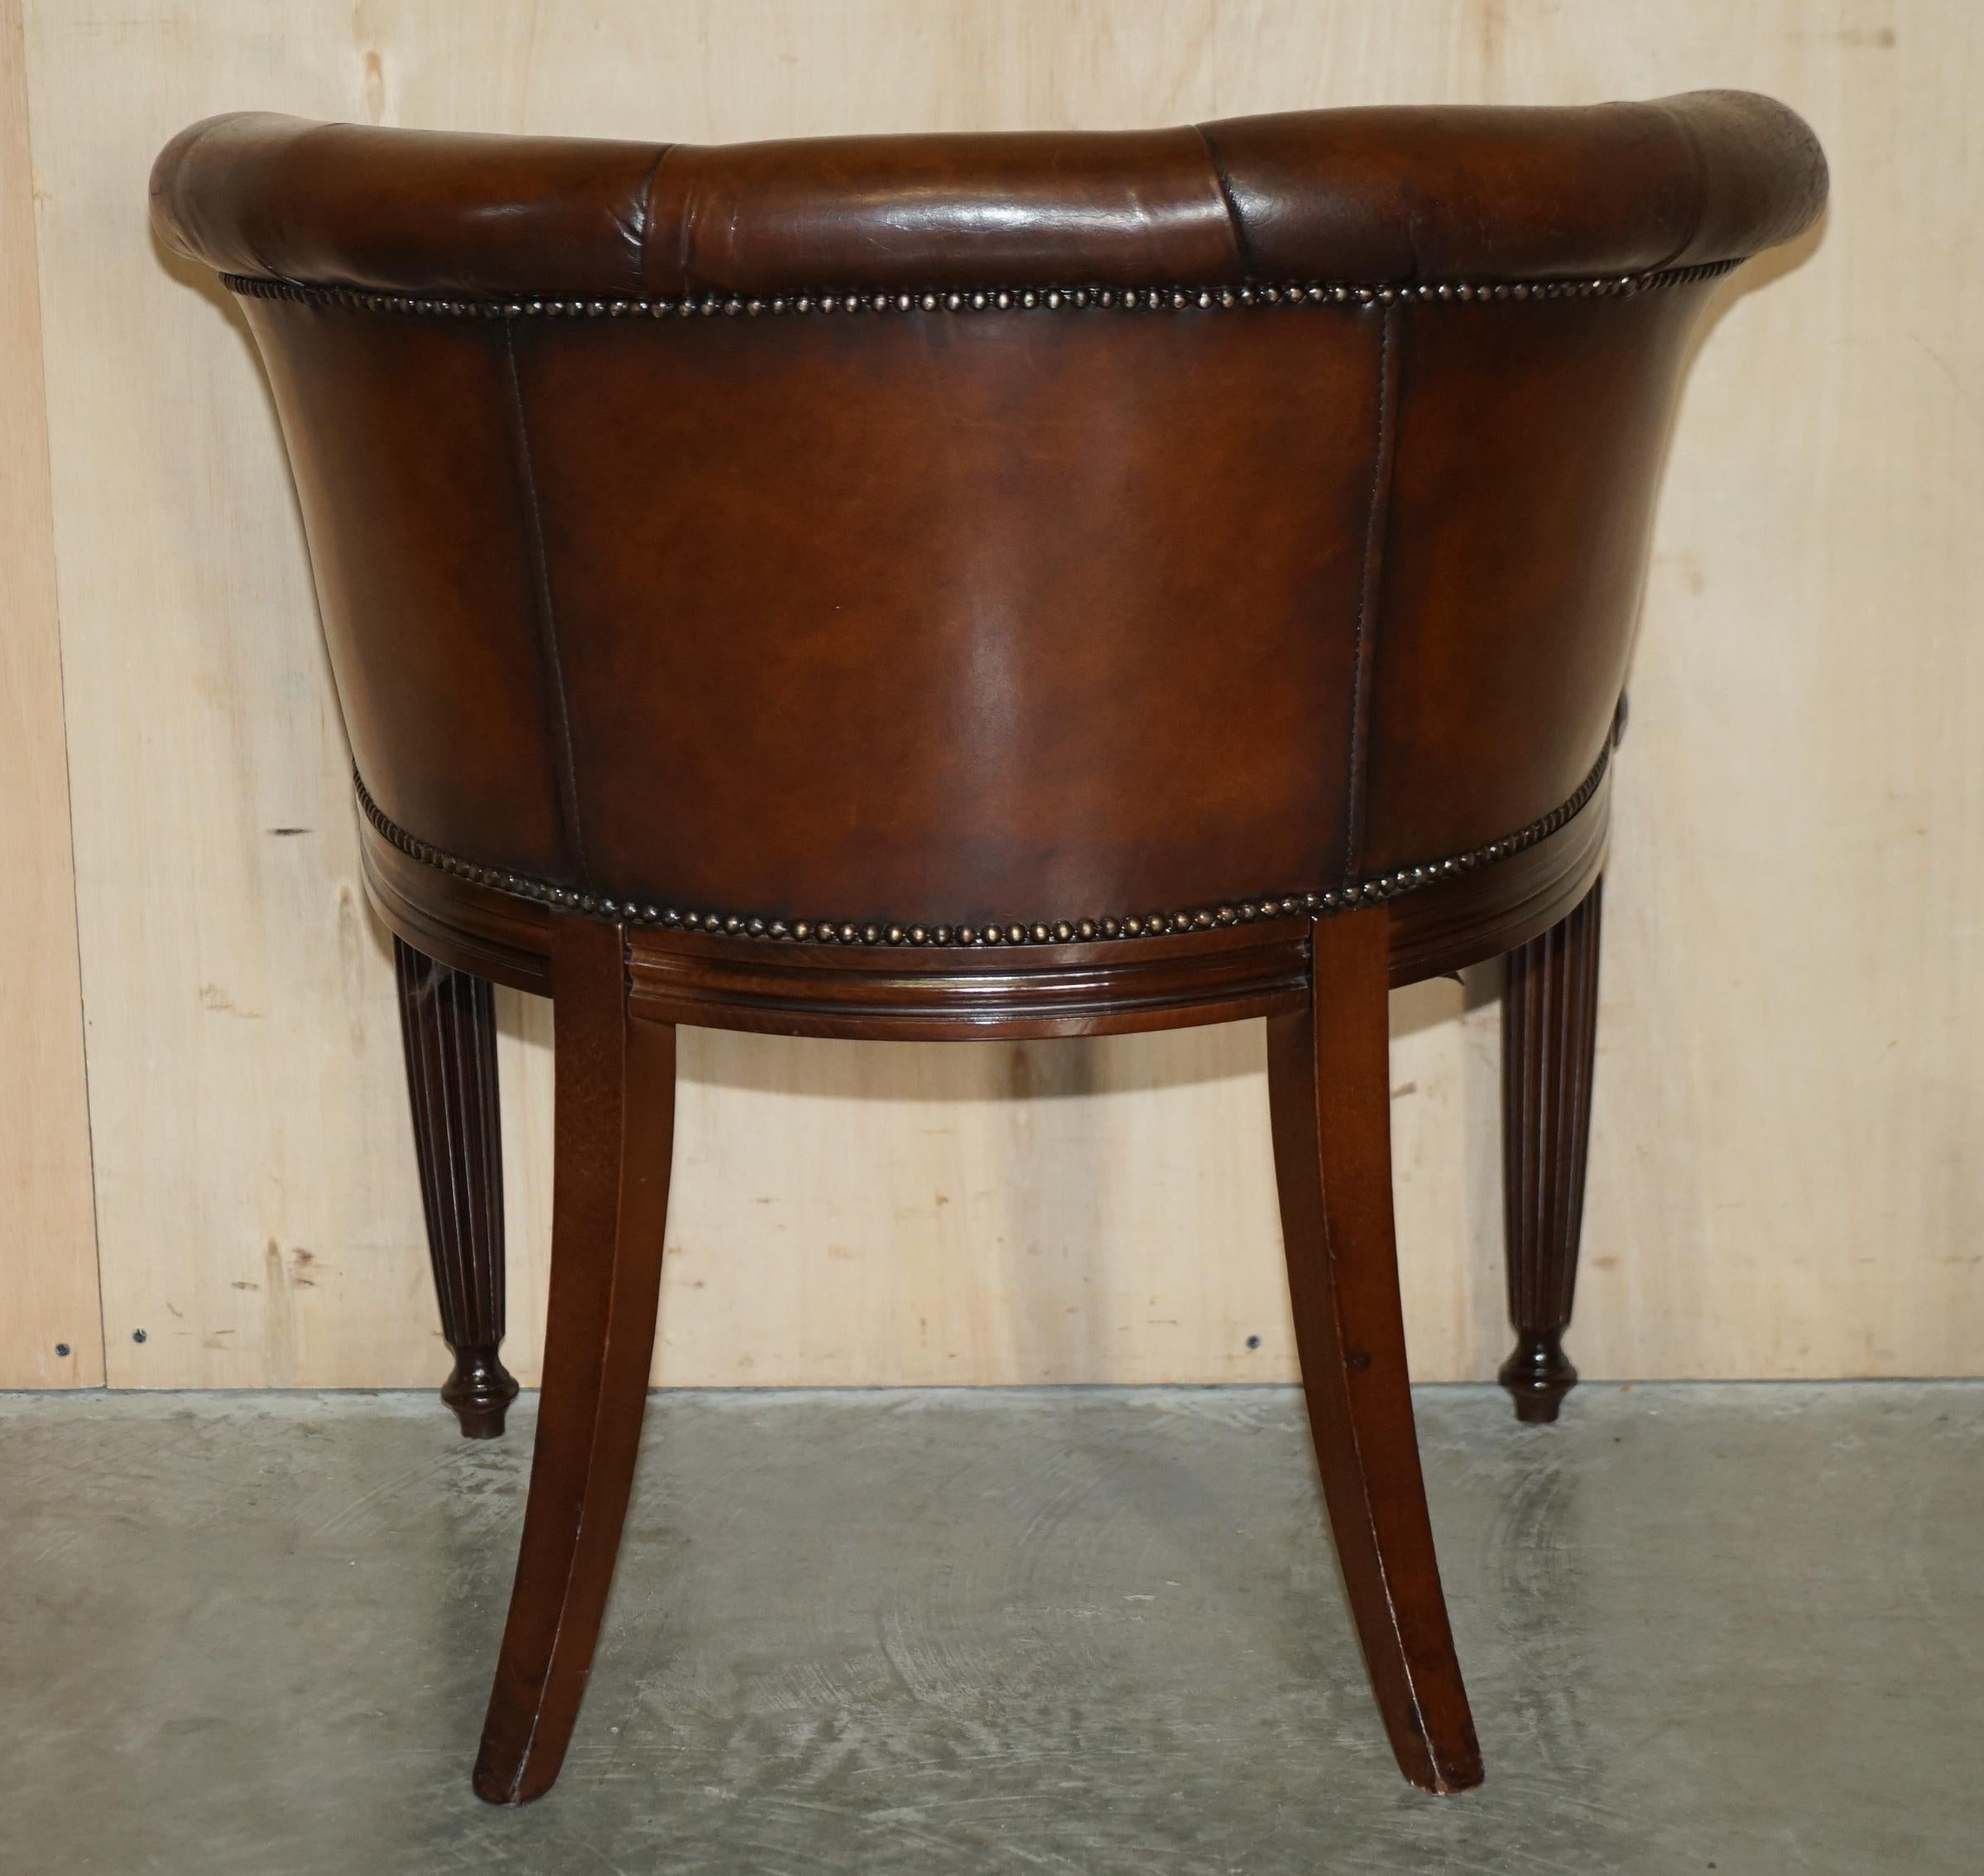 Fein vollständig restauriert Vintage Chesterfield getuftet Hand gefärbt Wanne Club Sessel 9